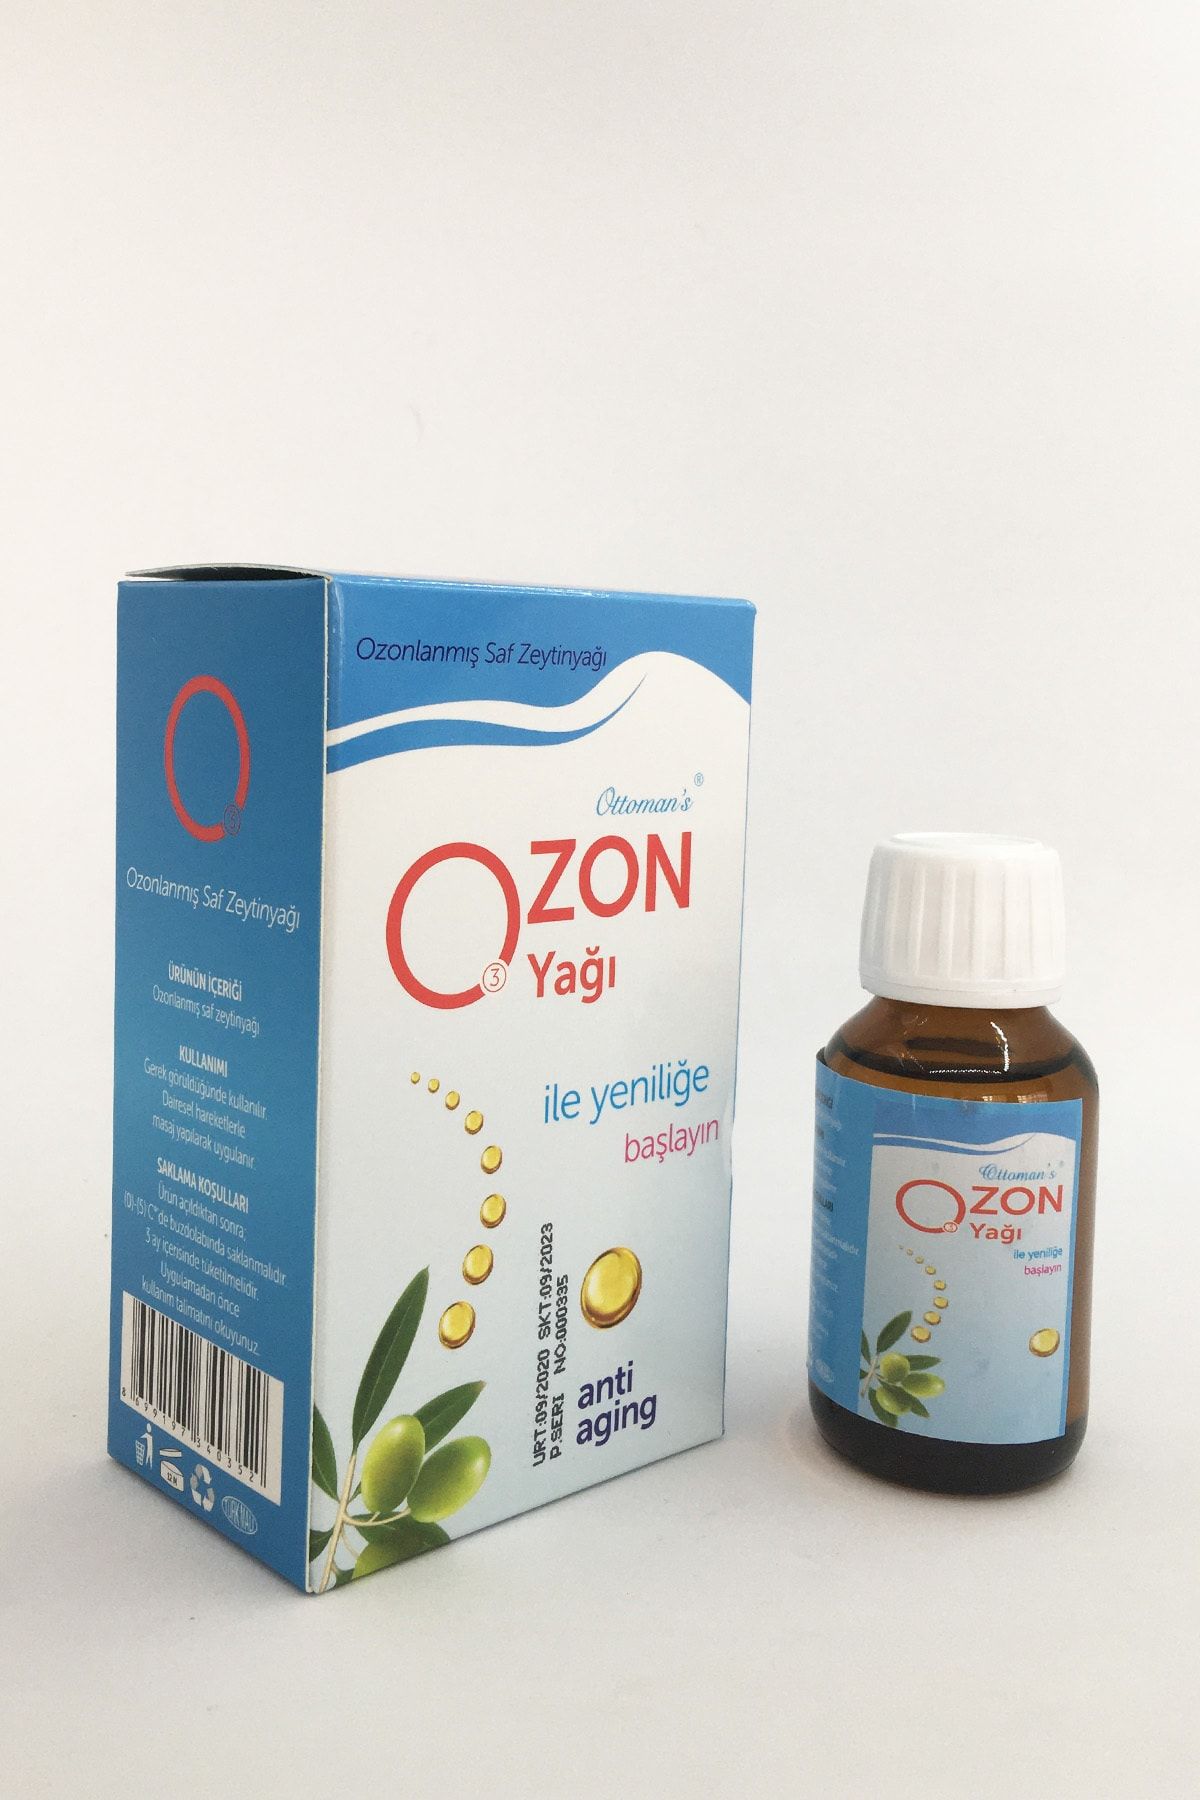 Ottoman's Doğal Ozon Yağı 50 Ml Ozonlanmış Saf Zeytinyağı Anti Aging